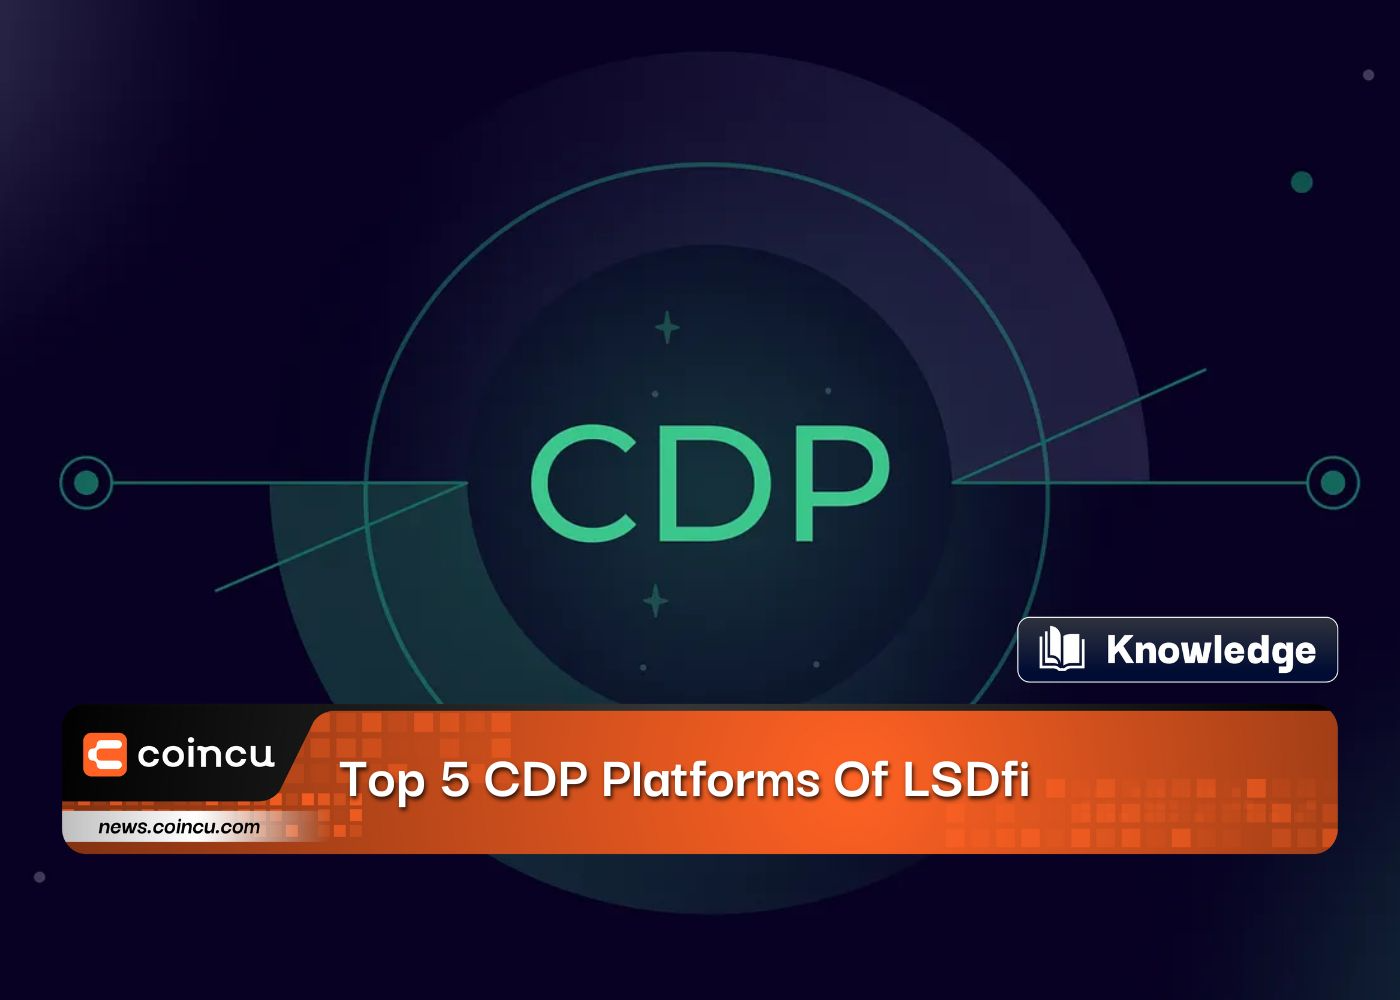 Top 5 CDP Platforms Of LSDfi